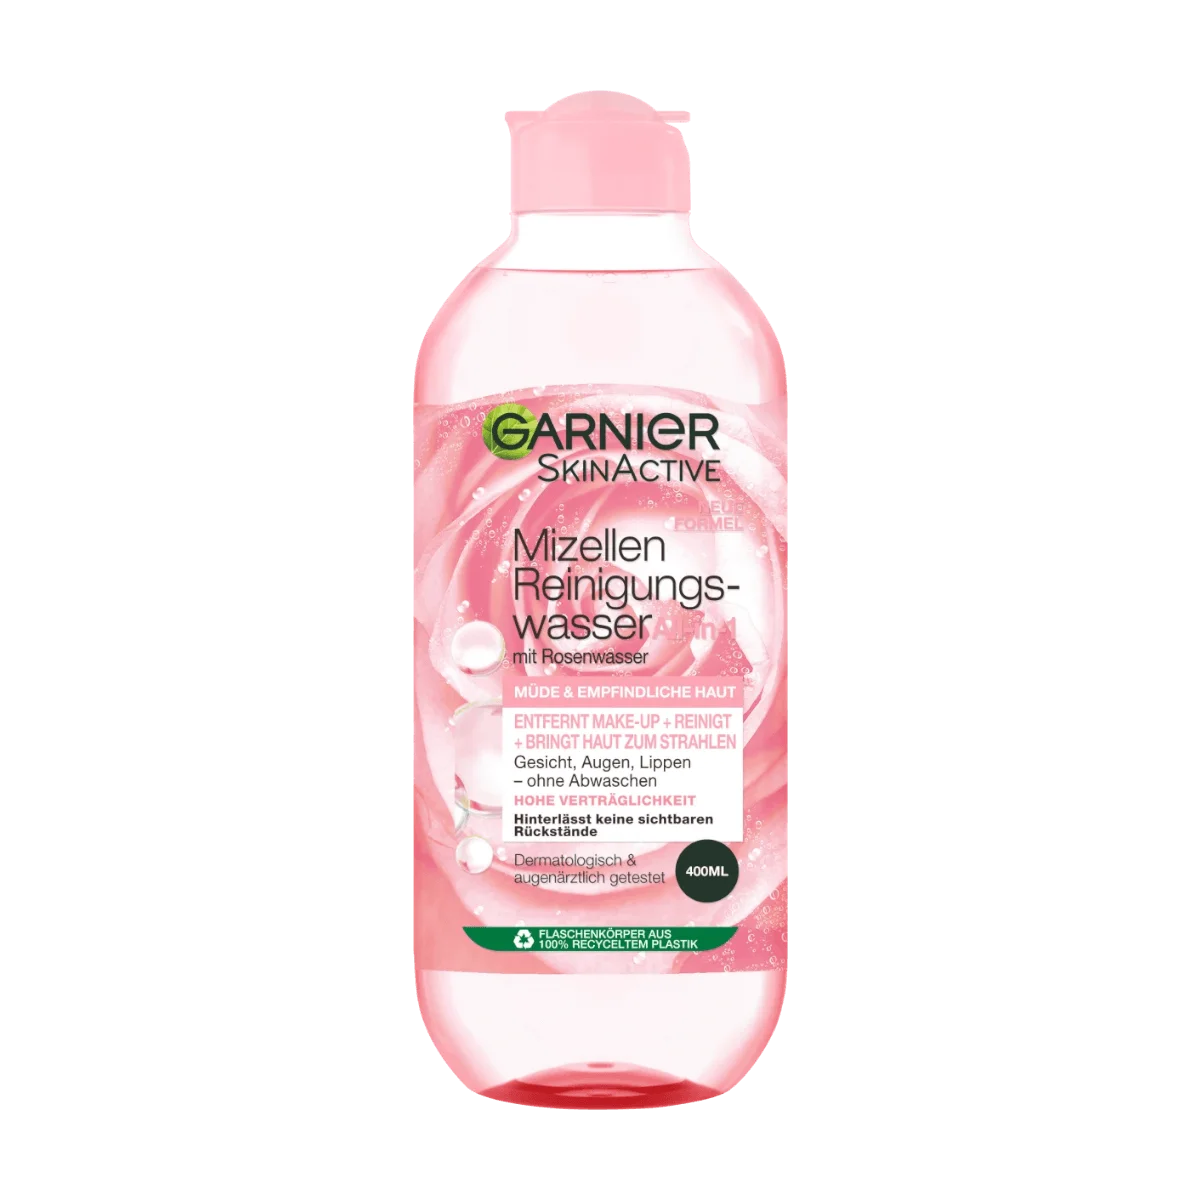 Garnier SkinActive Mizellen Reinigungswasser All-in-1 mit Rosenwasser, 400 ml